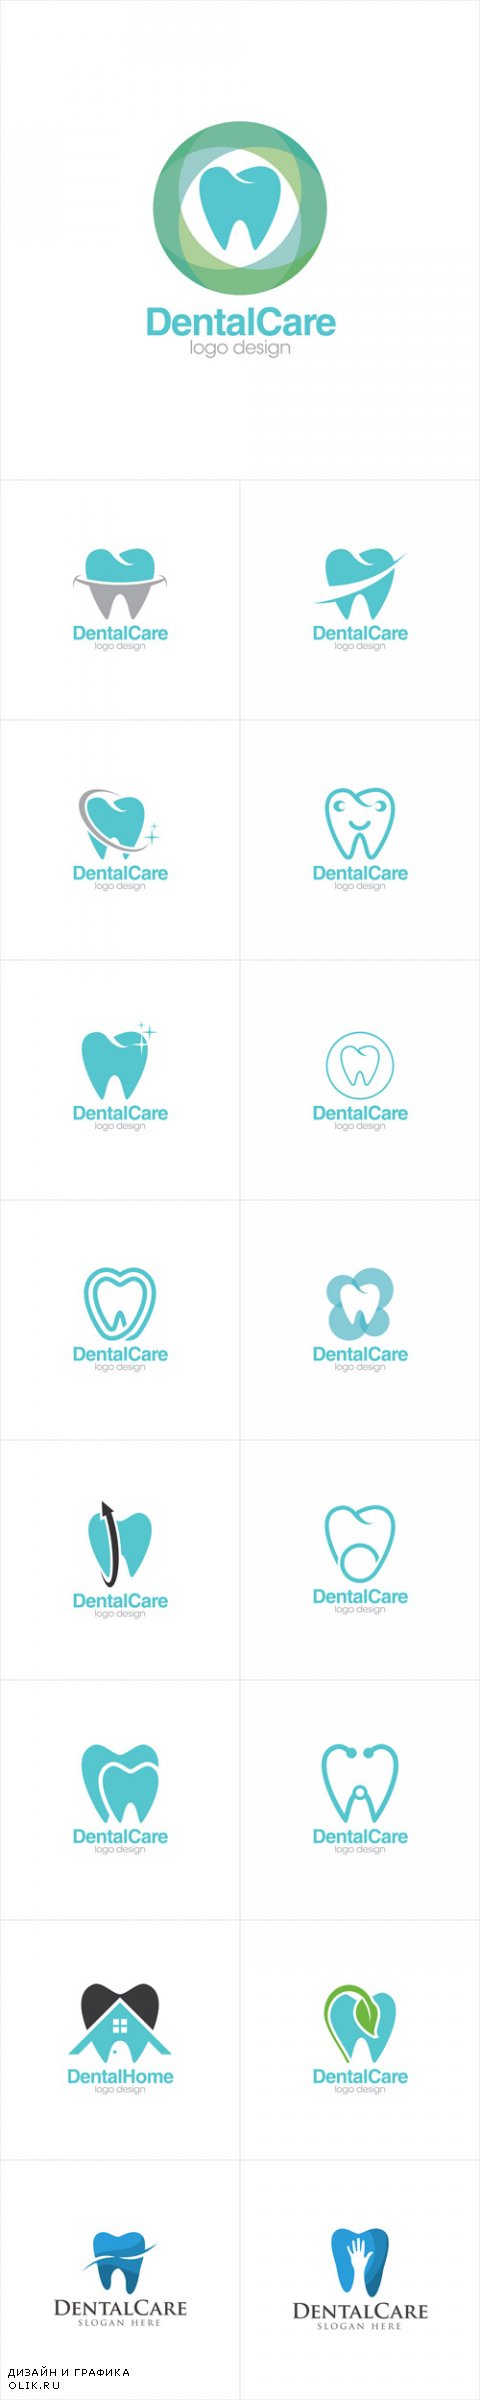 Vector Dental Care Creative Concept Logo Design Templates